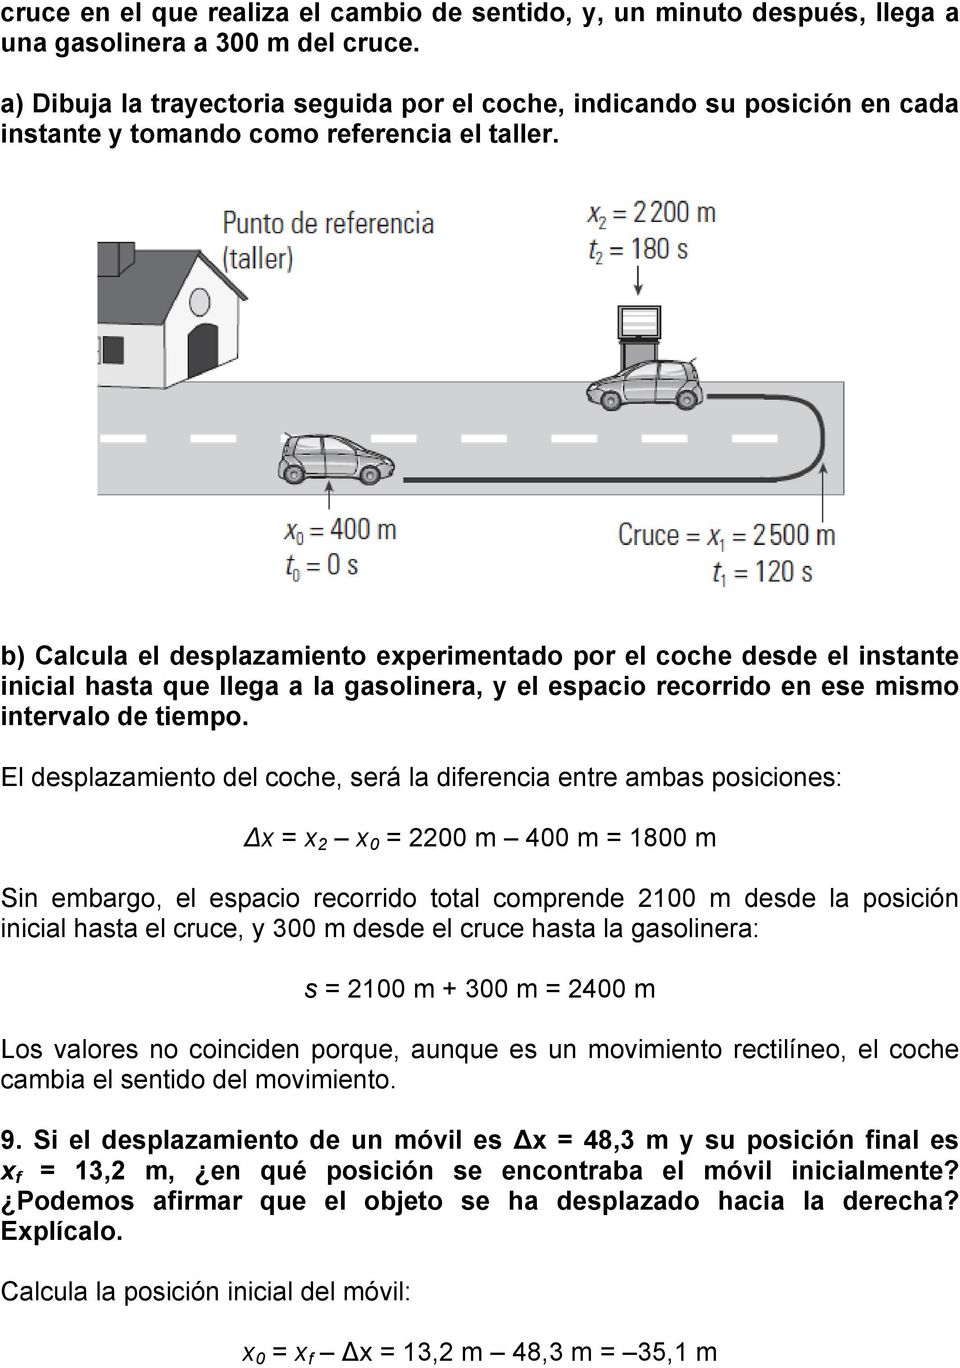 b) Calcula el desplazamiento experimentado por el coche desde el instante inicial hasta que llega a la gasolinera, y el espacio recorrido en ese mismo intervalo de tiempo.